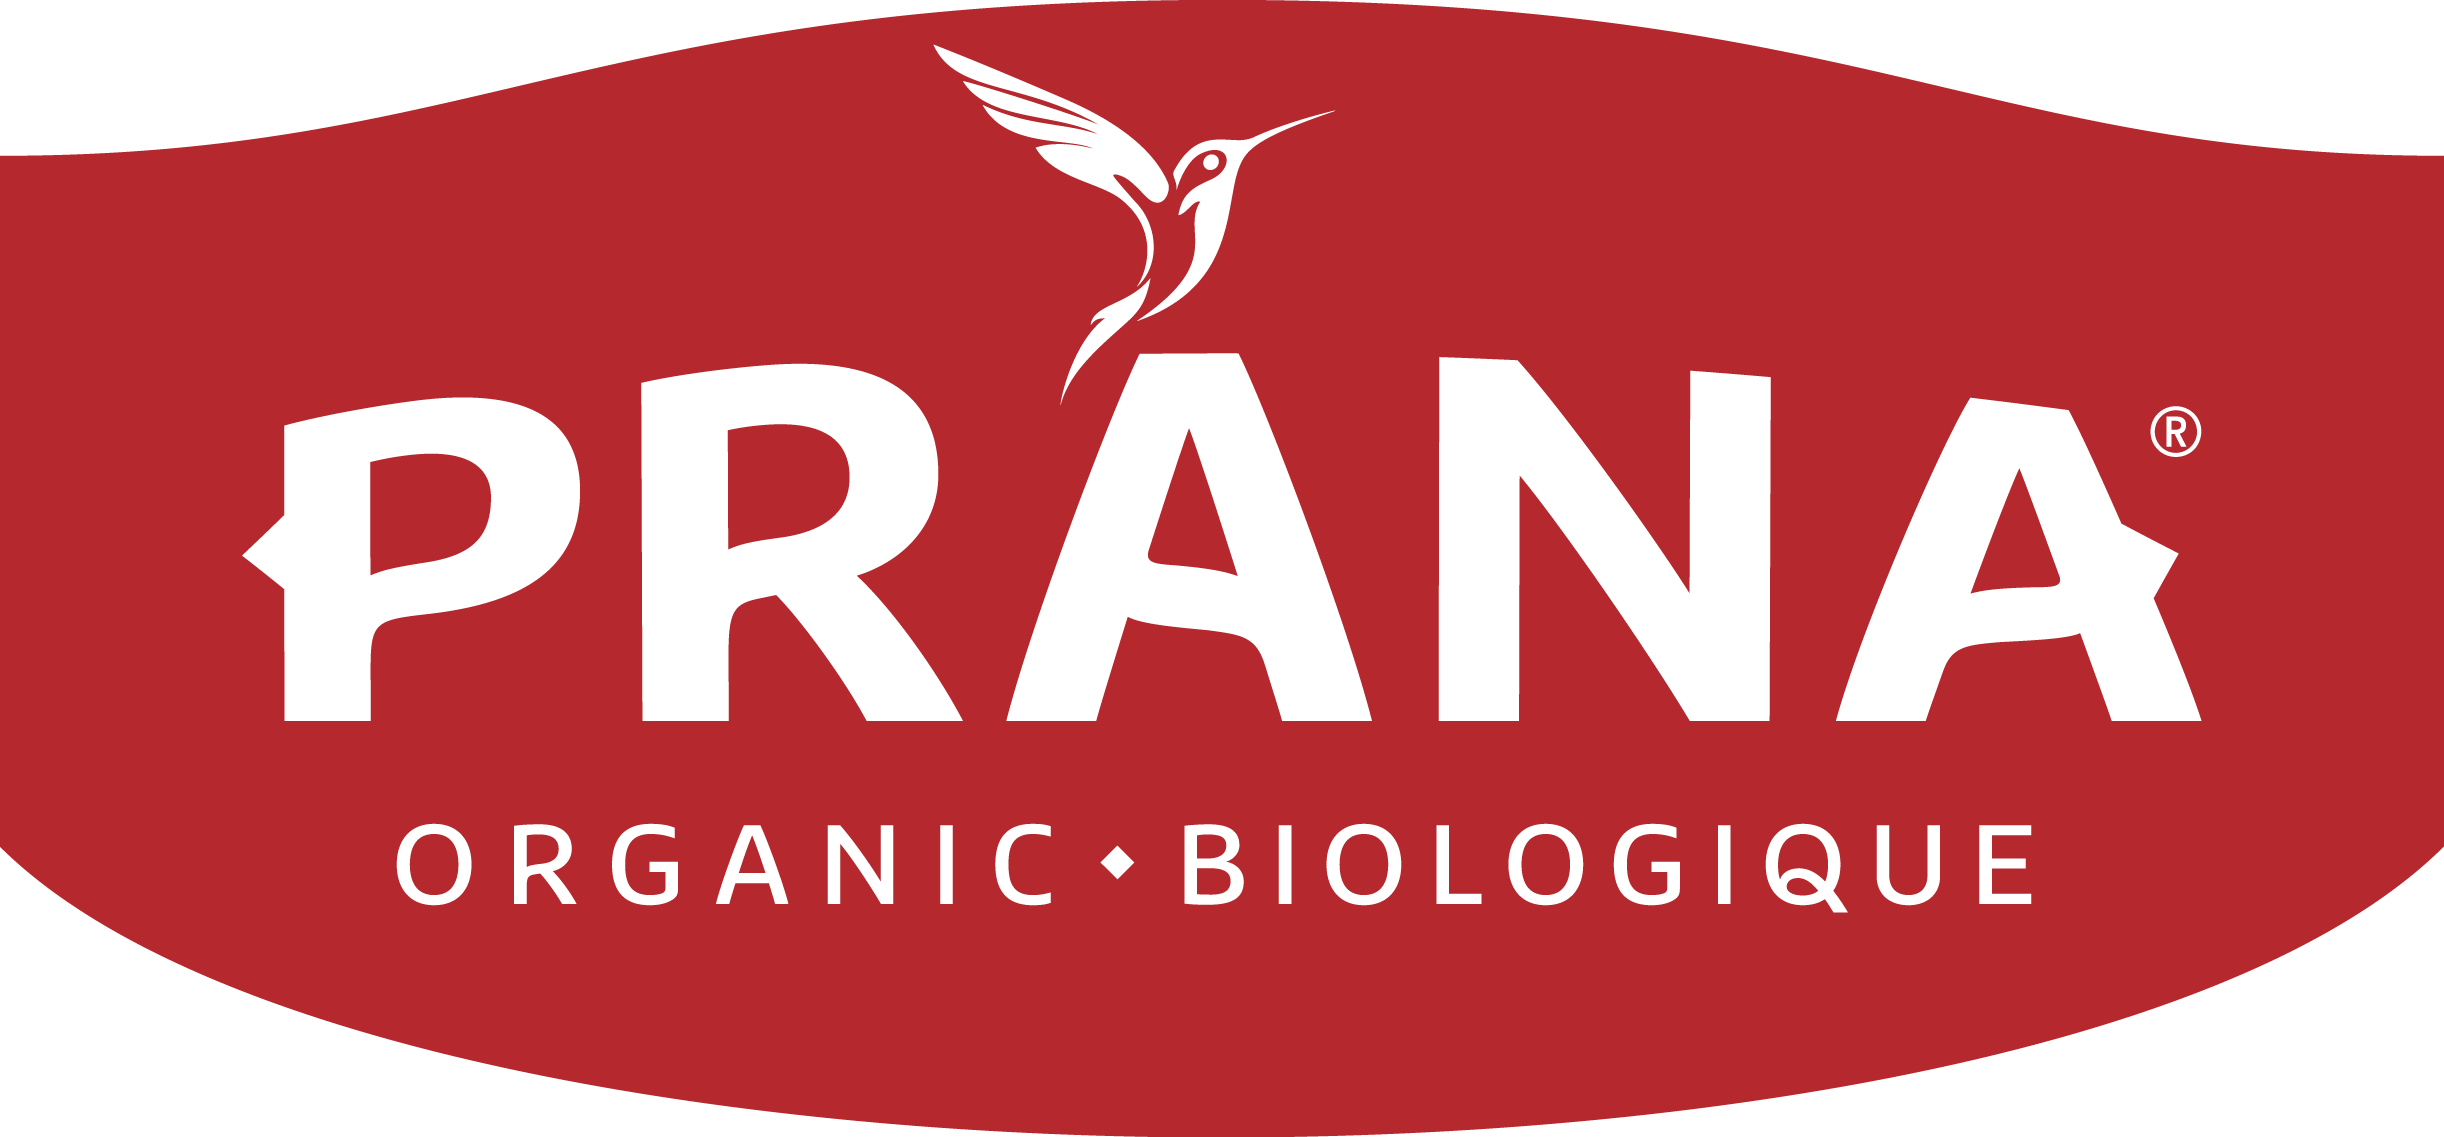 Pranana Logo - Prana Logos